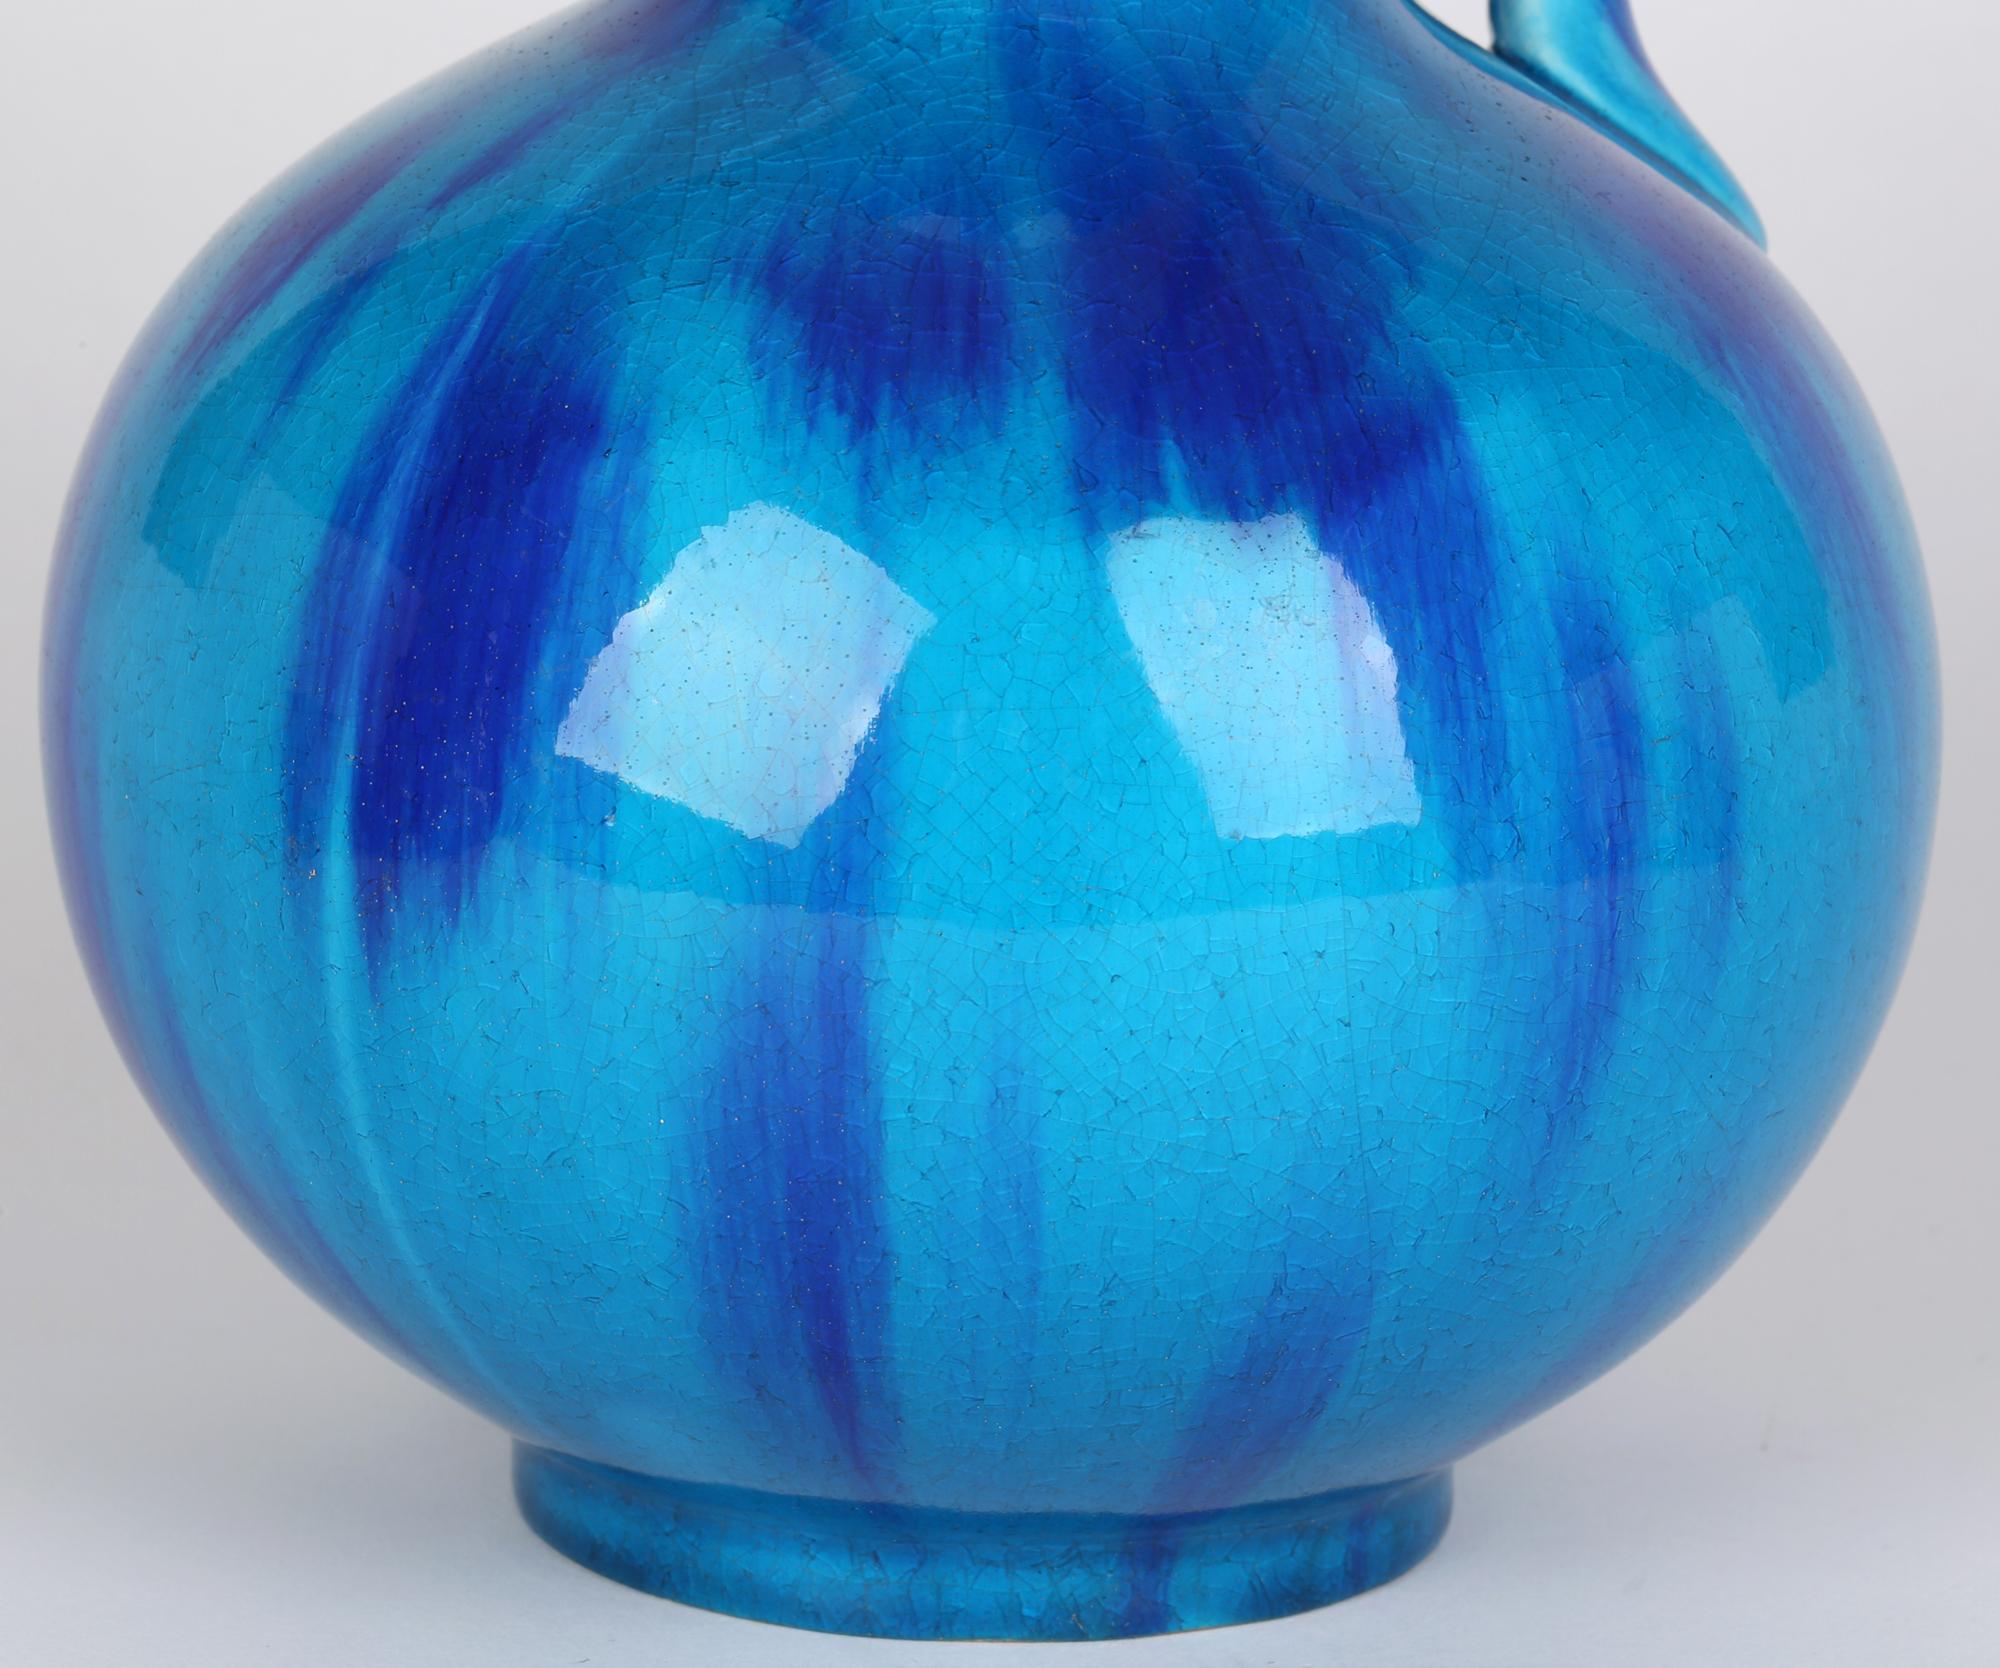 Minton Aesthetic Movement Blue & Turquoise Glazed Handled Art Pottery Vase 7